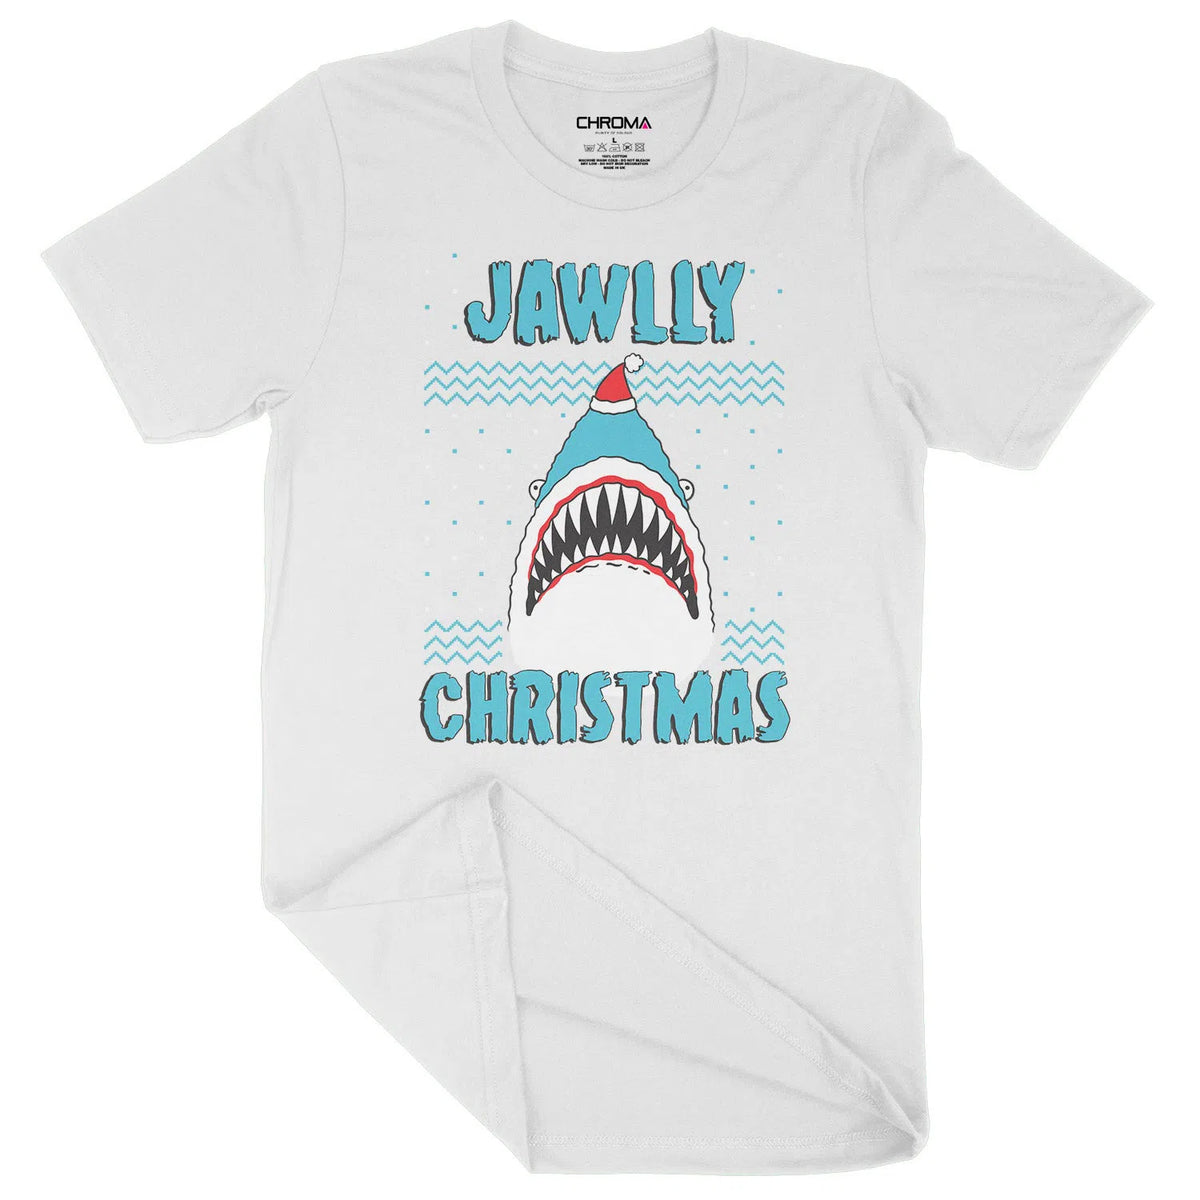 Jawlly Christmas | Unisex Christmas T-Shirt Chroma Clothing